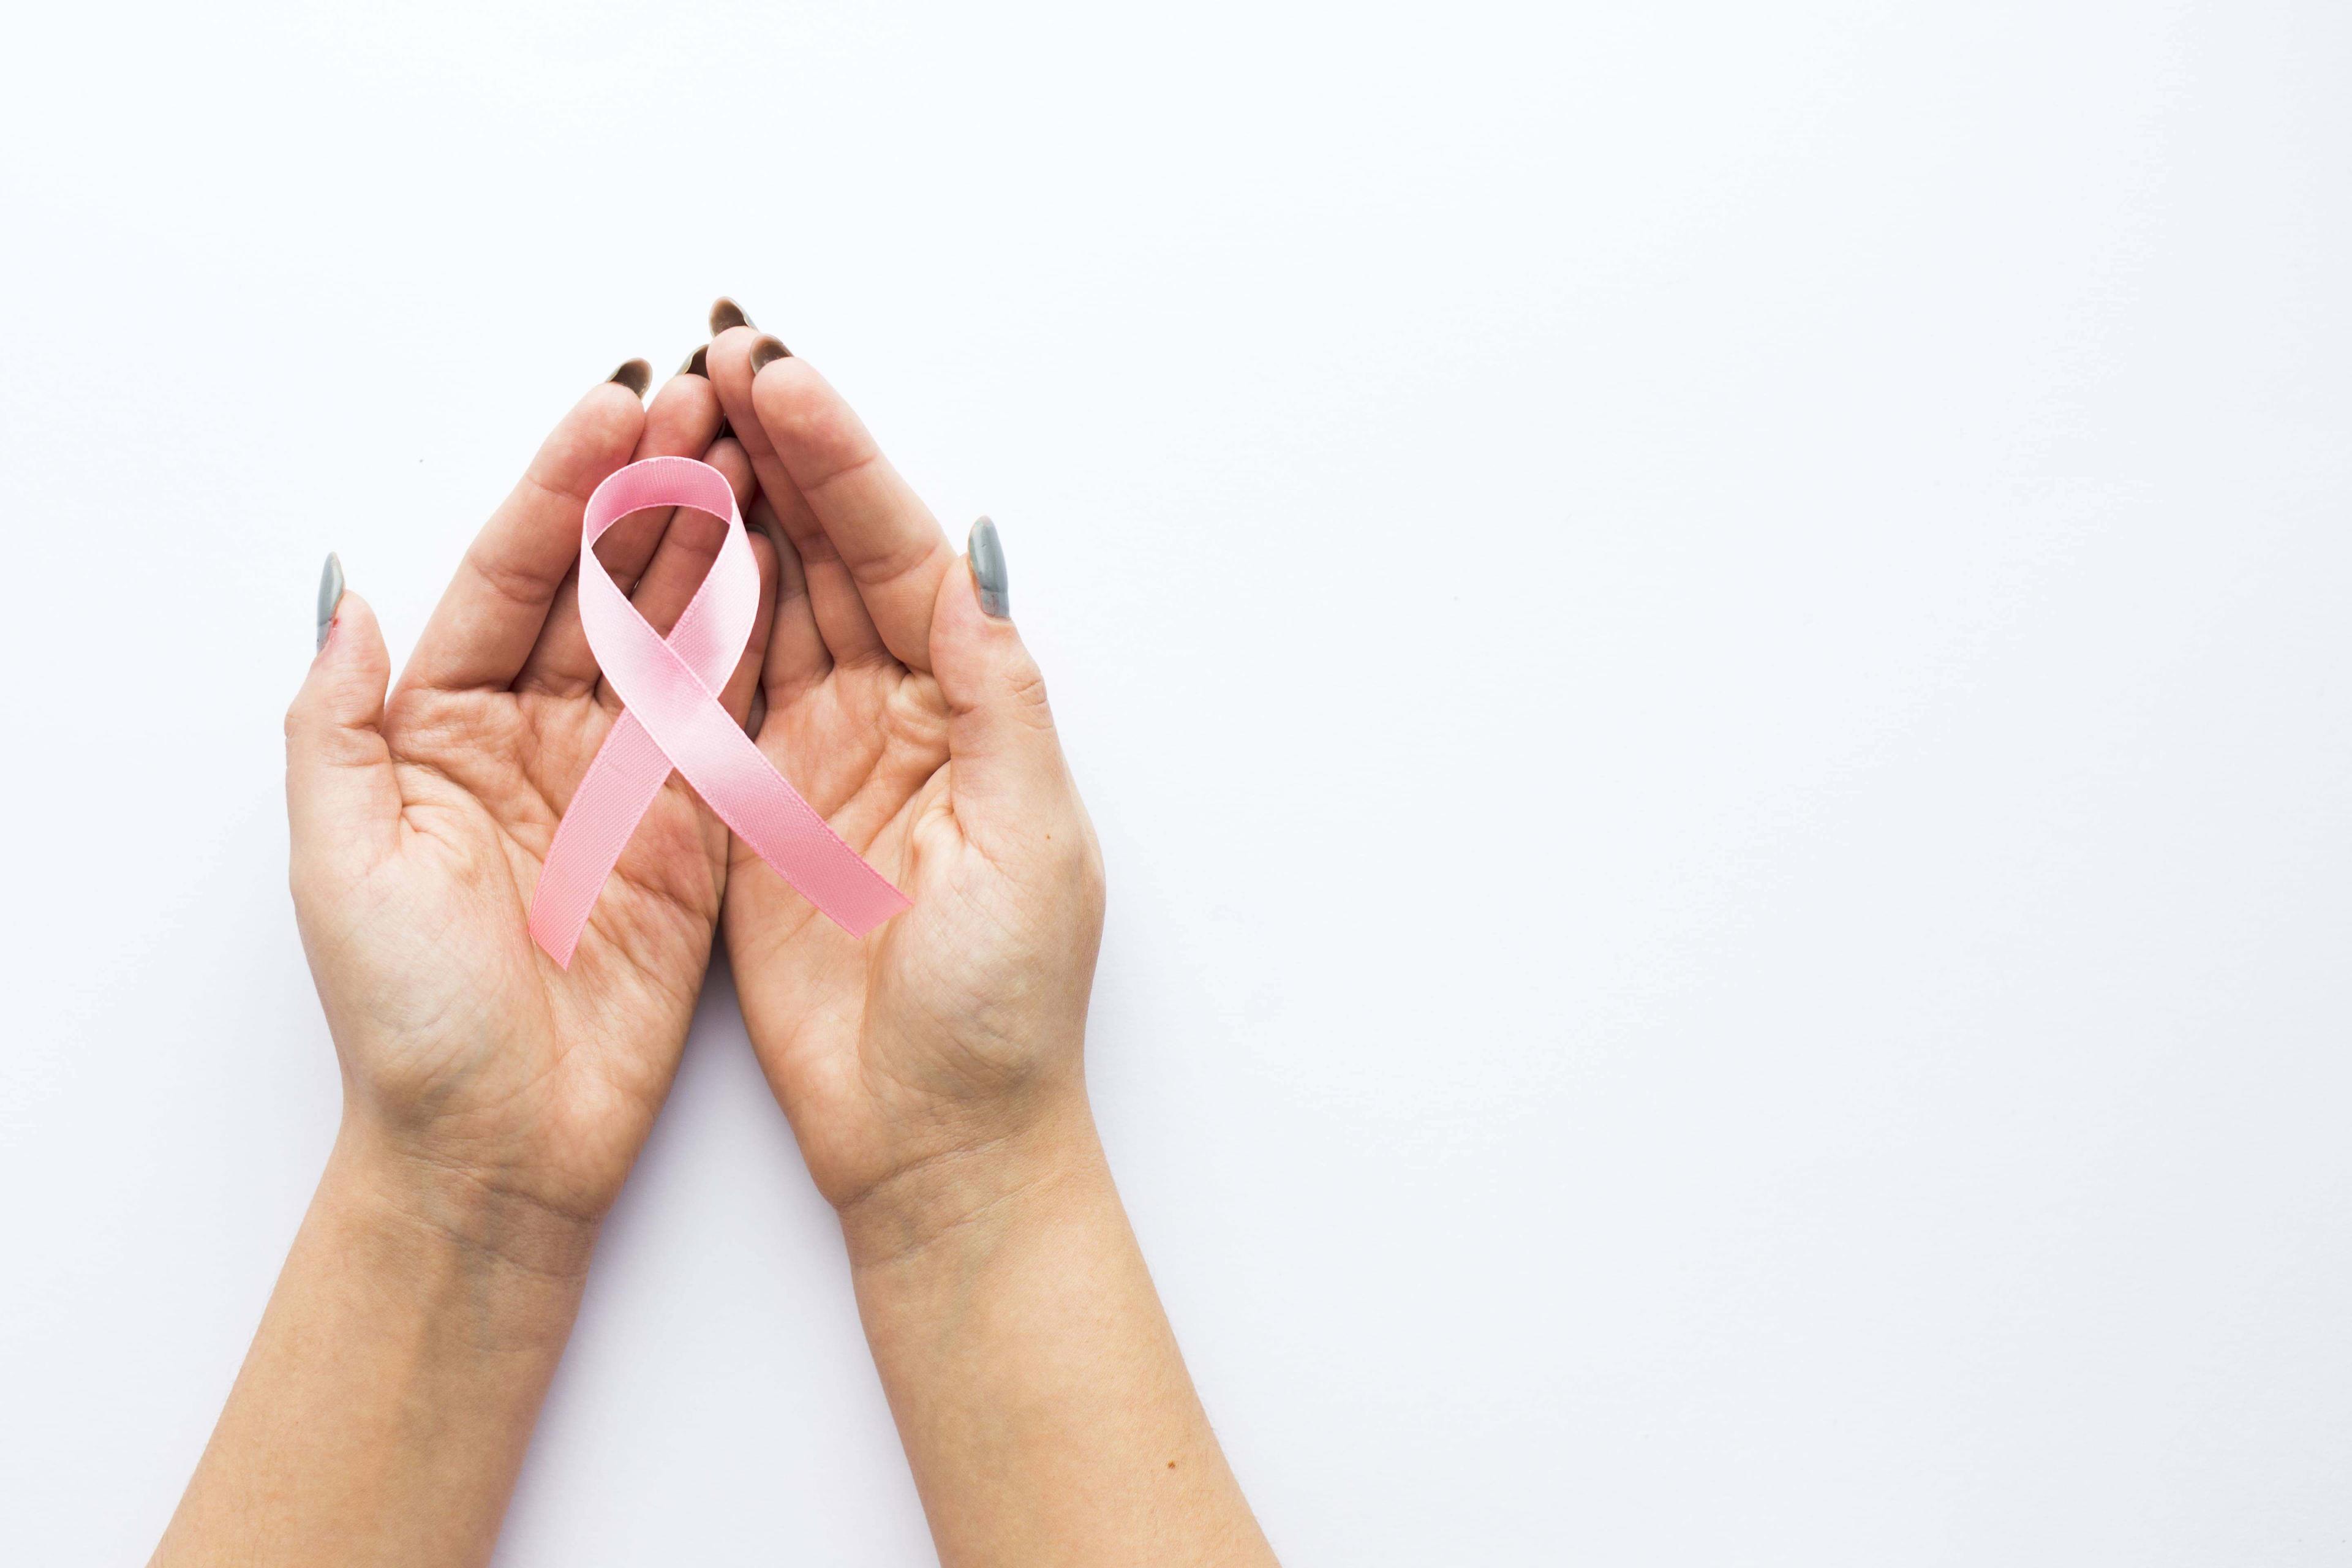 स्तन कैंसर के लक्षण: स्तन कैंसर के 10 सामान्य लक्षण